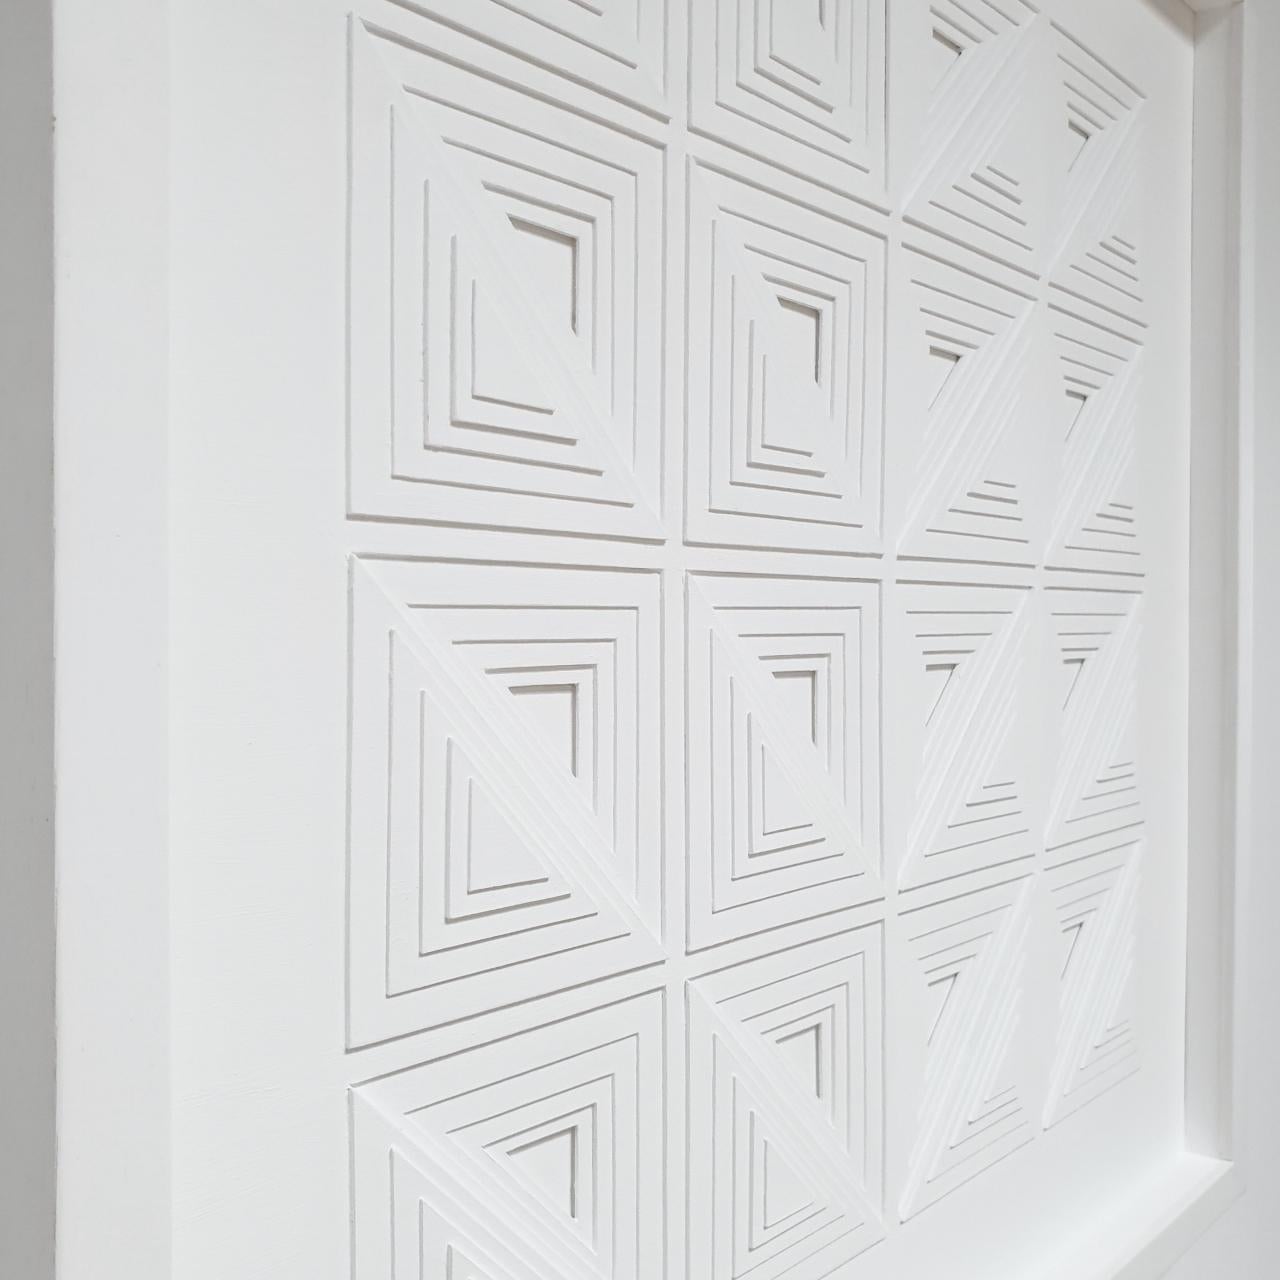 Formes triangulaires 4K2L2R - peinture abstraite moderne contemporaine blanche en relief - Contemporain Sculpture par Eef de Graaf